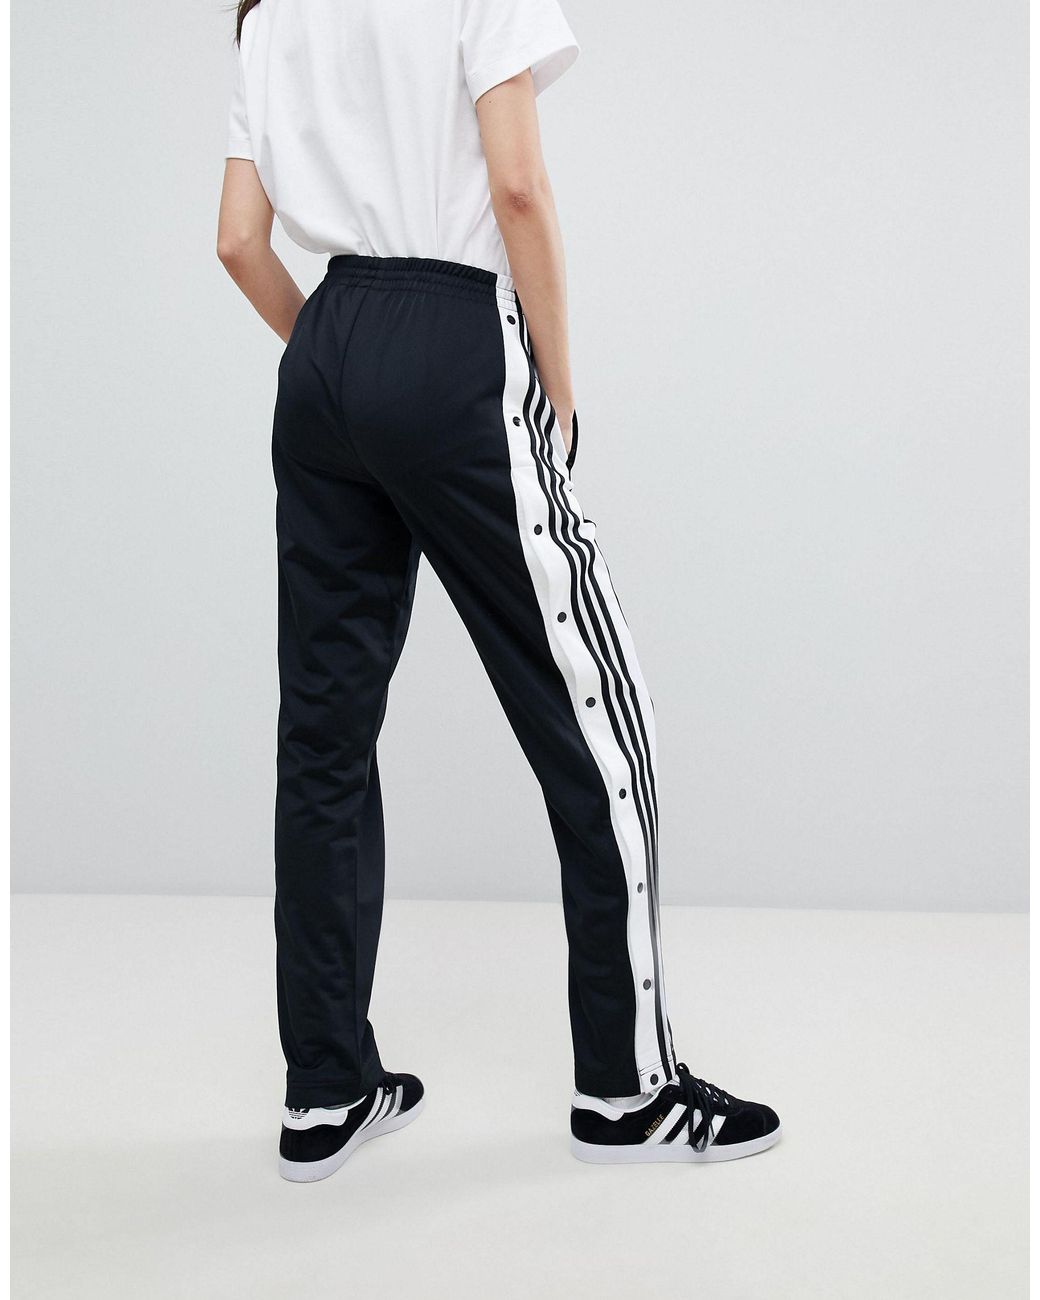 adidas Originals Damen – adicolor – e Hose mit Druckknöpfen in schwarz